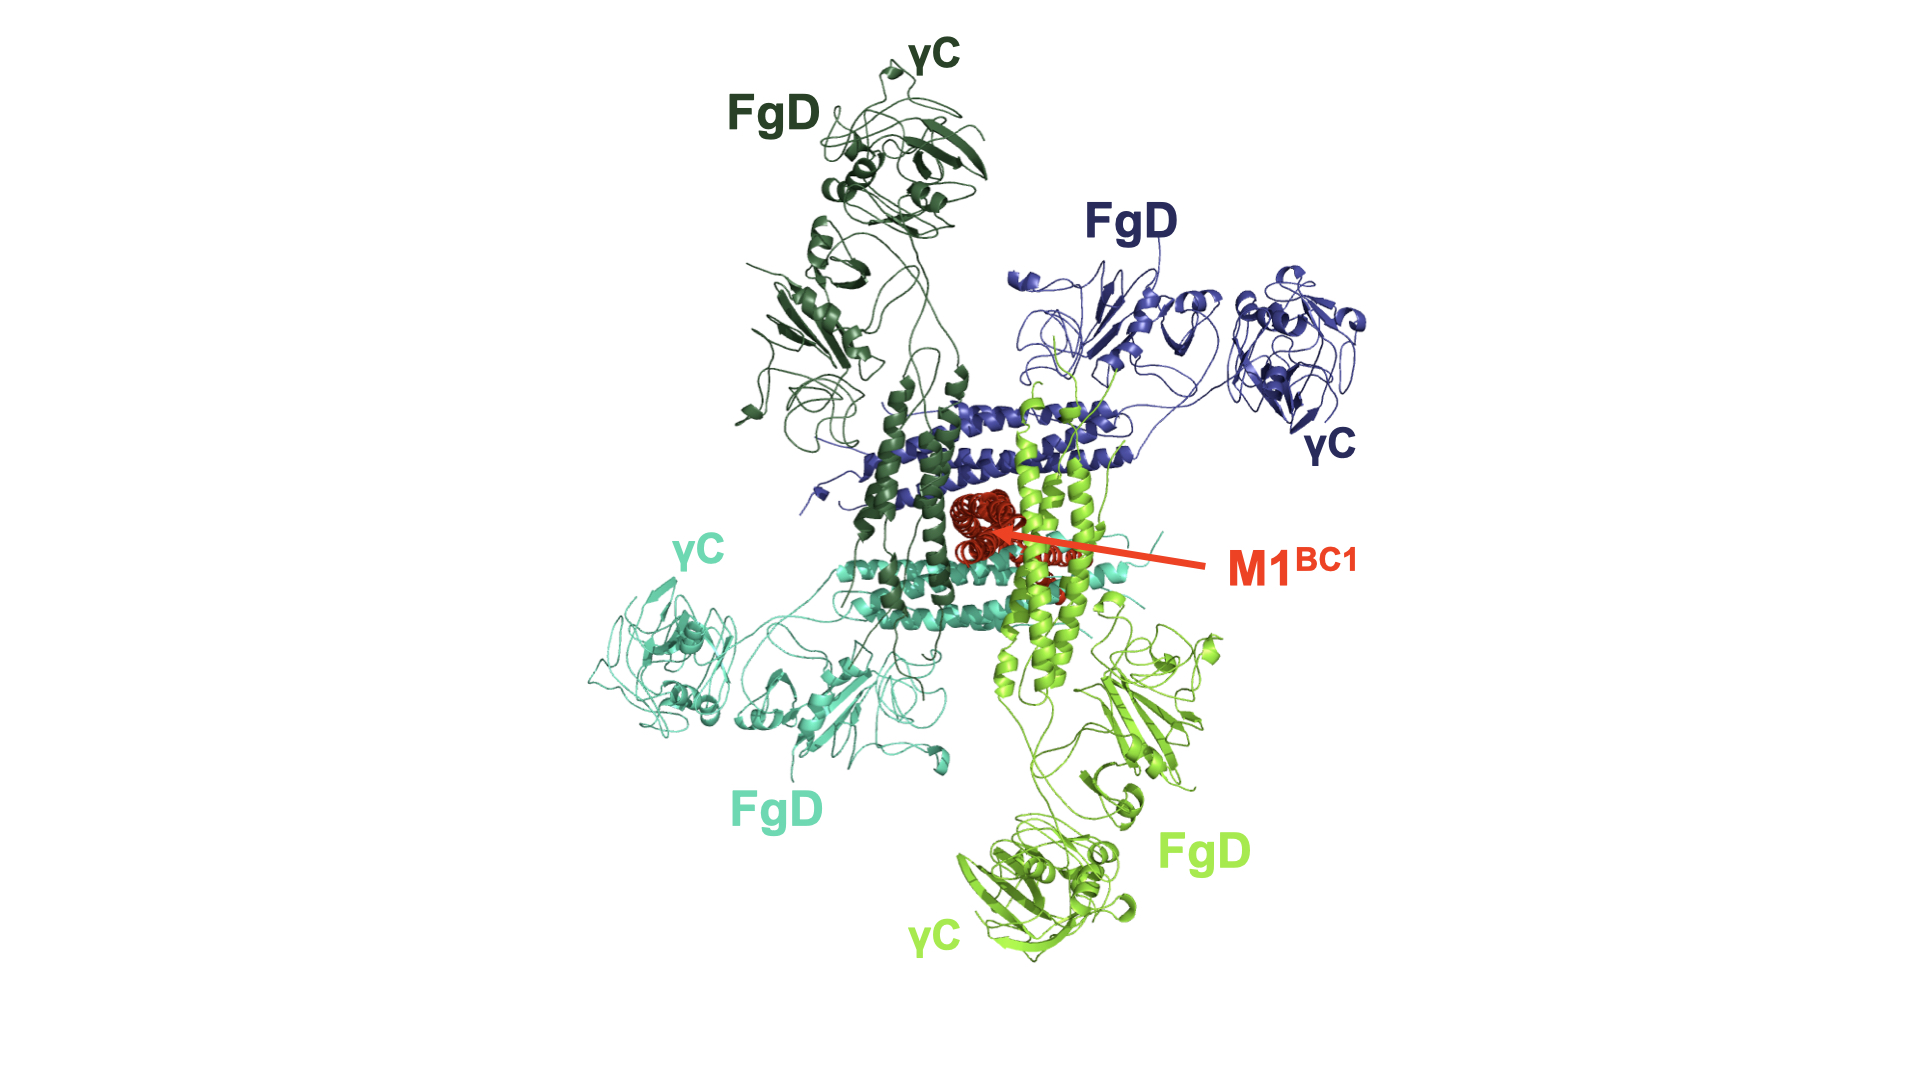 M1 protein bound to fibrinogen fragment D